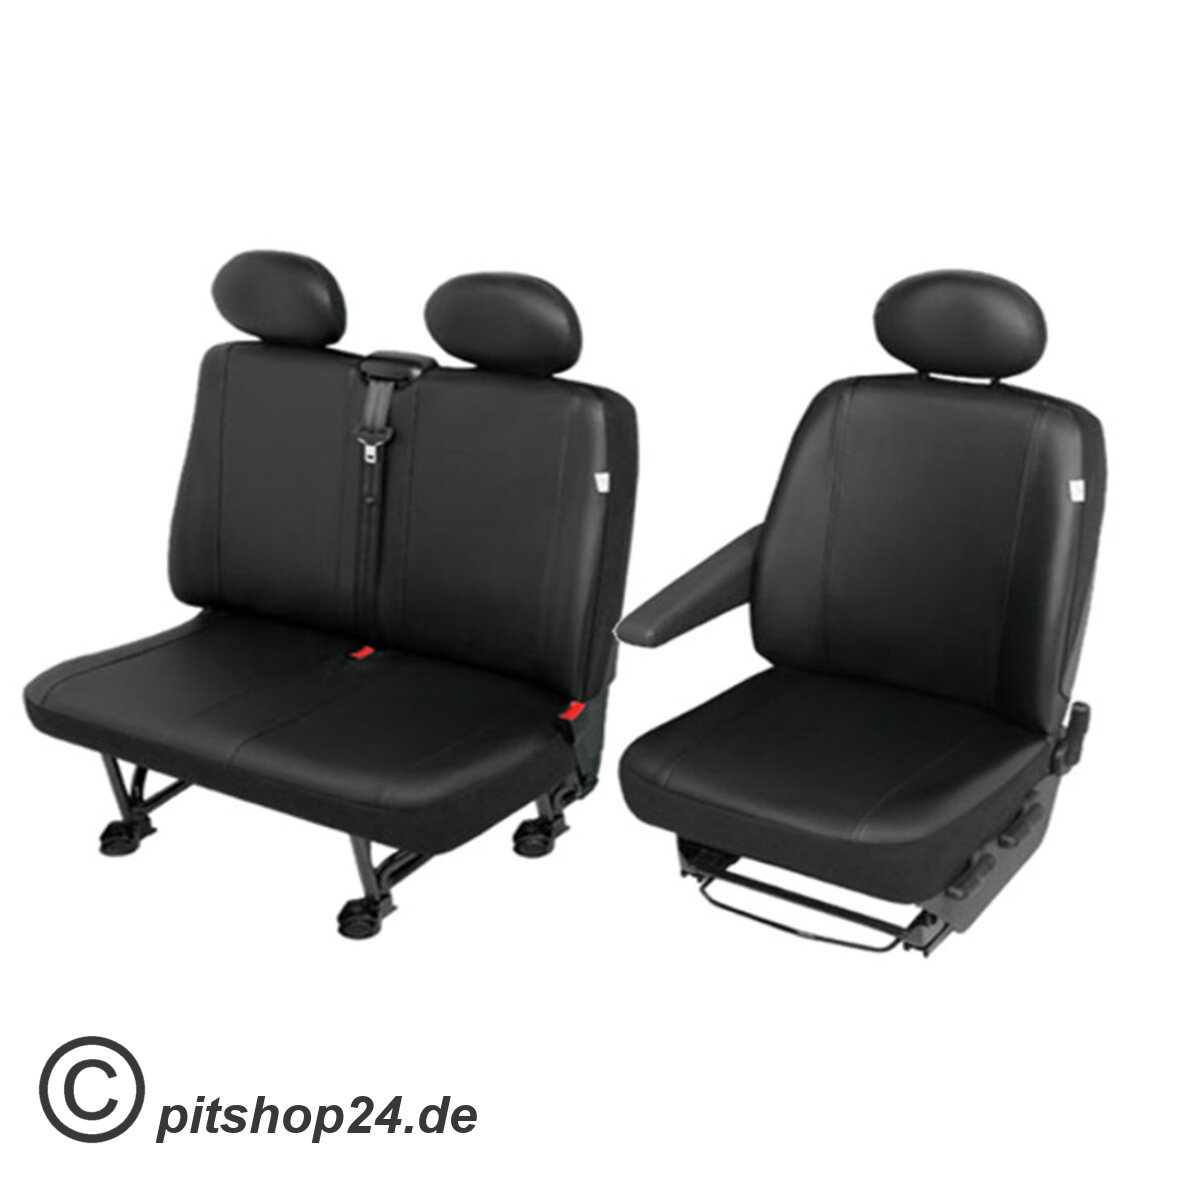 https://pitshop24.de/media/image/product/1668/lg/mercedes-sprinter-kunstleder-sitzbezuege-sitzschoner-set-fahrersitz-doppelbank-robust-und-pflegeleicht_3.jpg